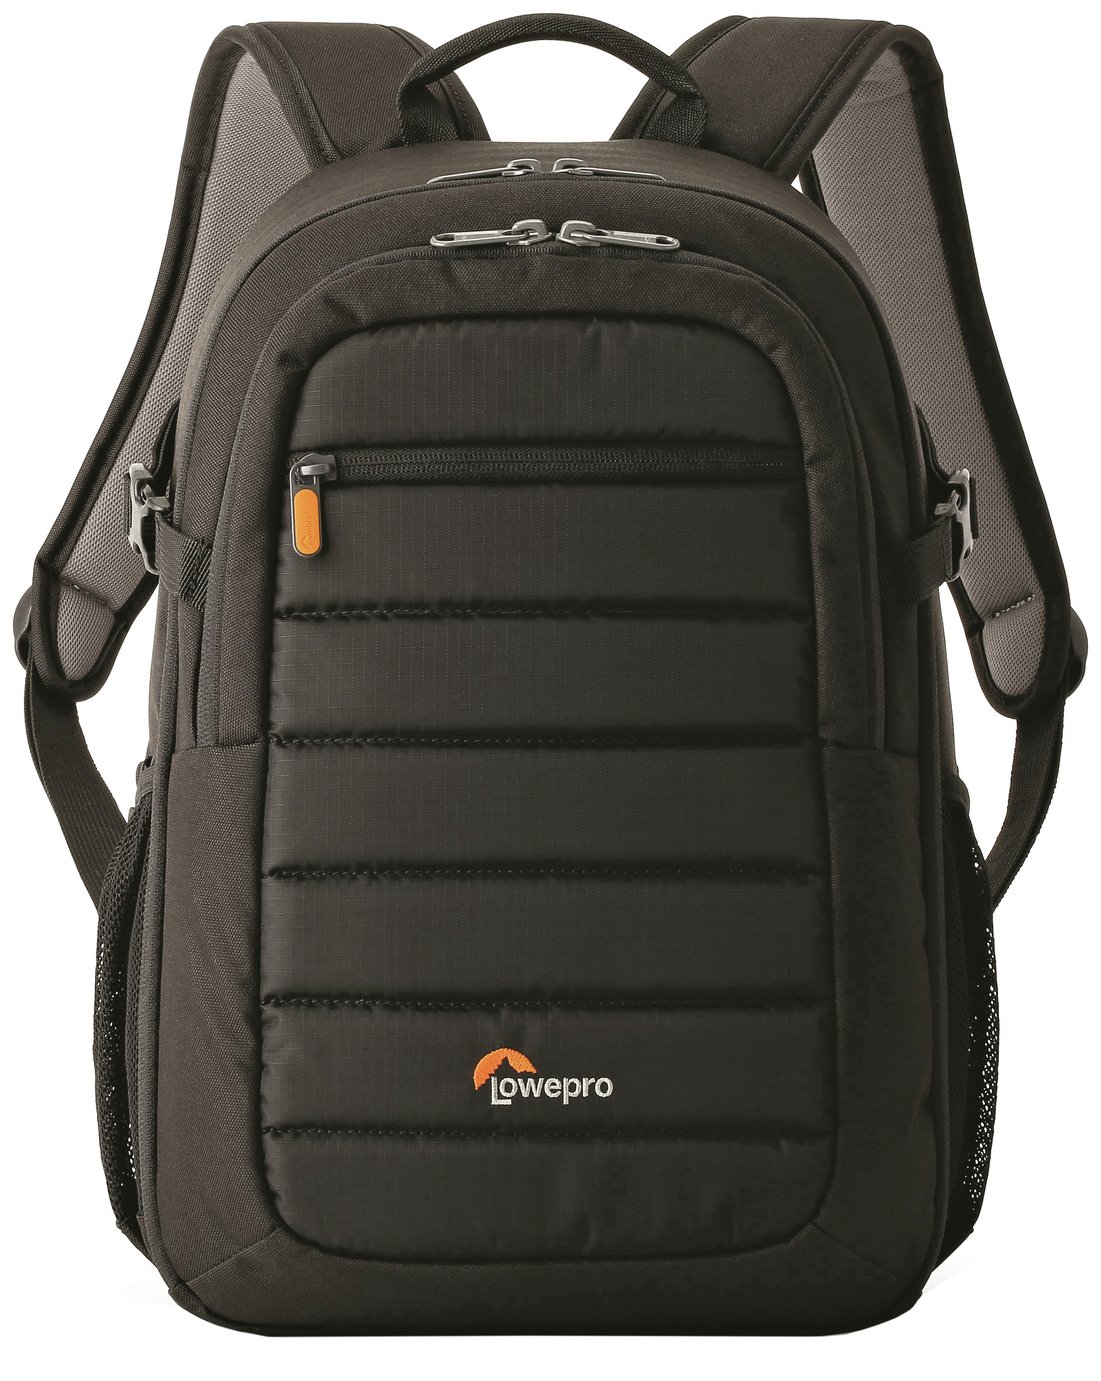 Lowepro Tahoe BP150 Backpack Review